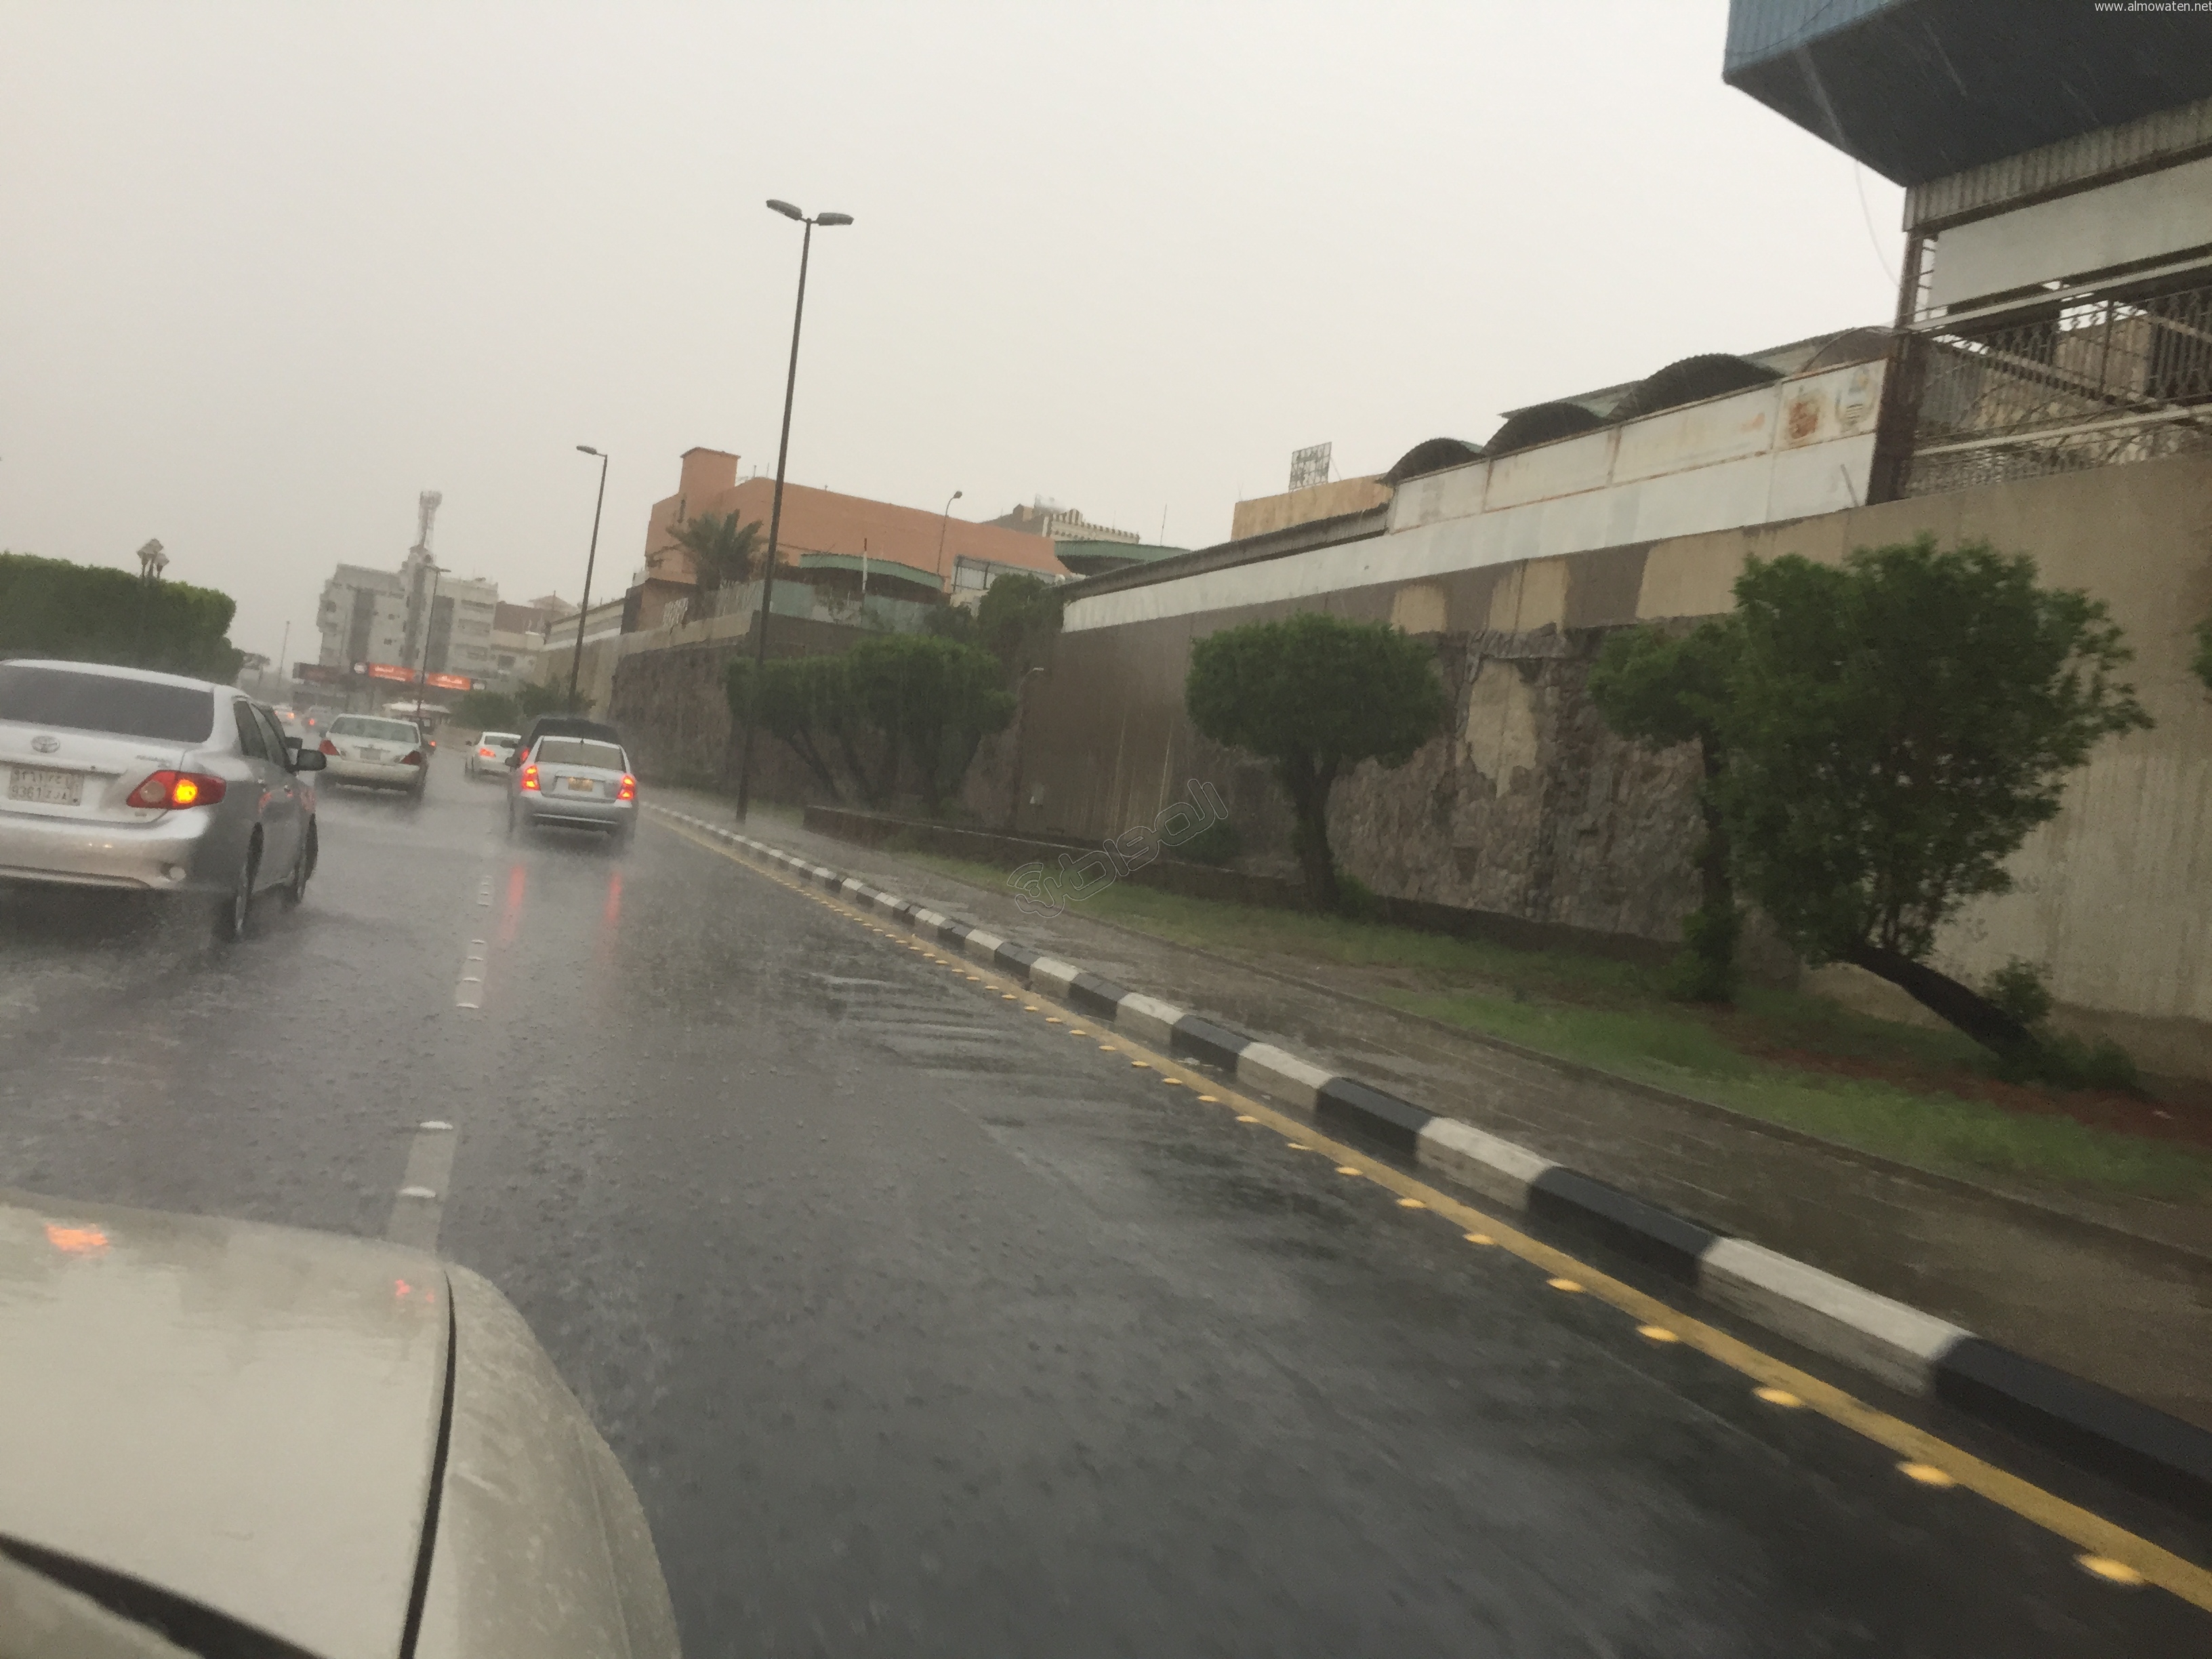 تحذير من نزول المتنزهين بسبب أمطار مُحتملة على الطائف